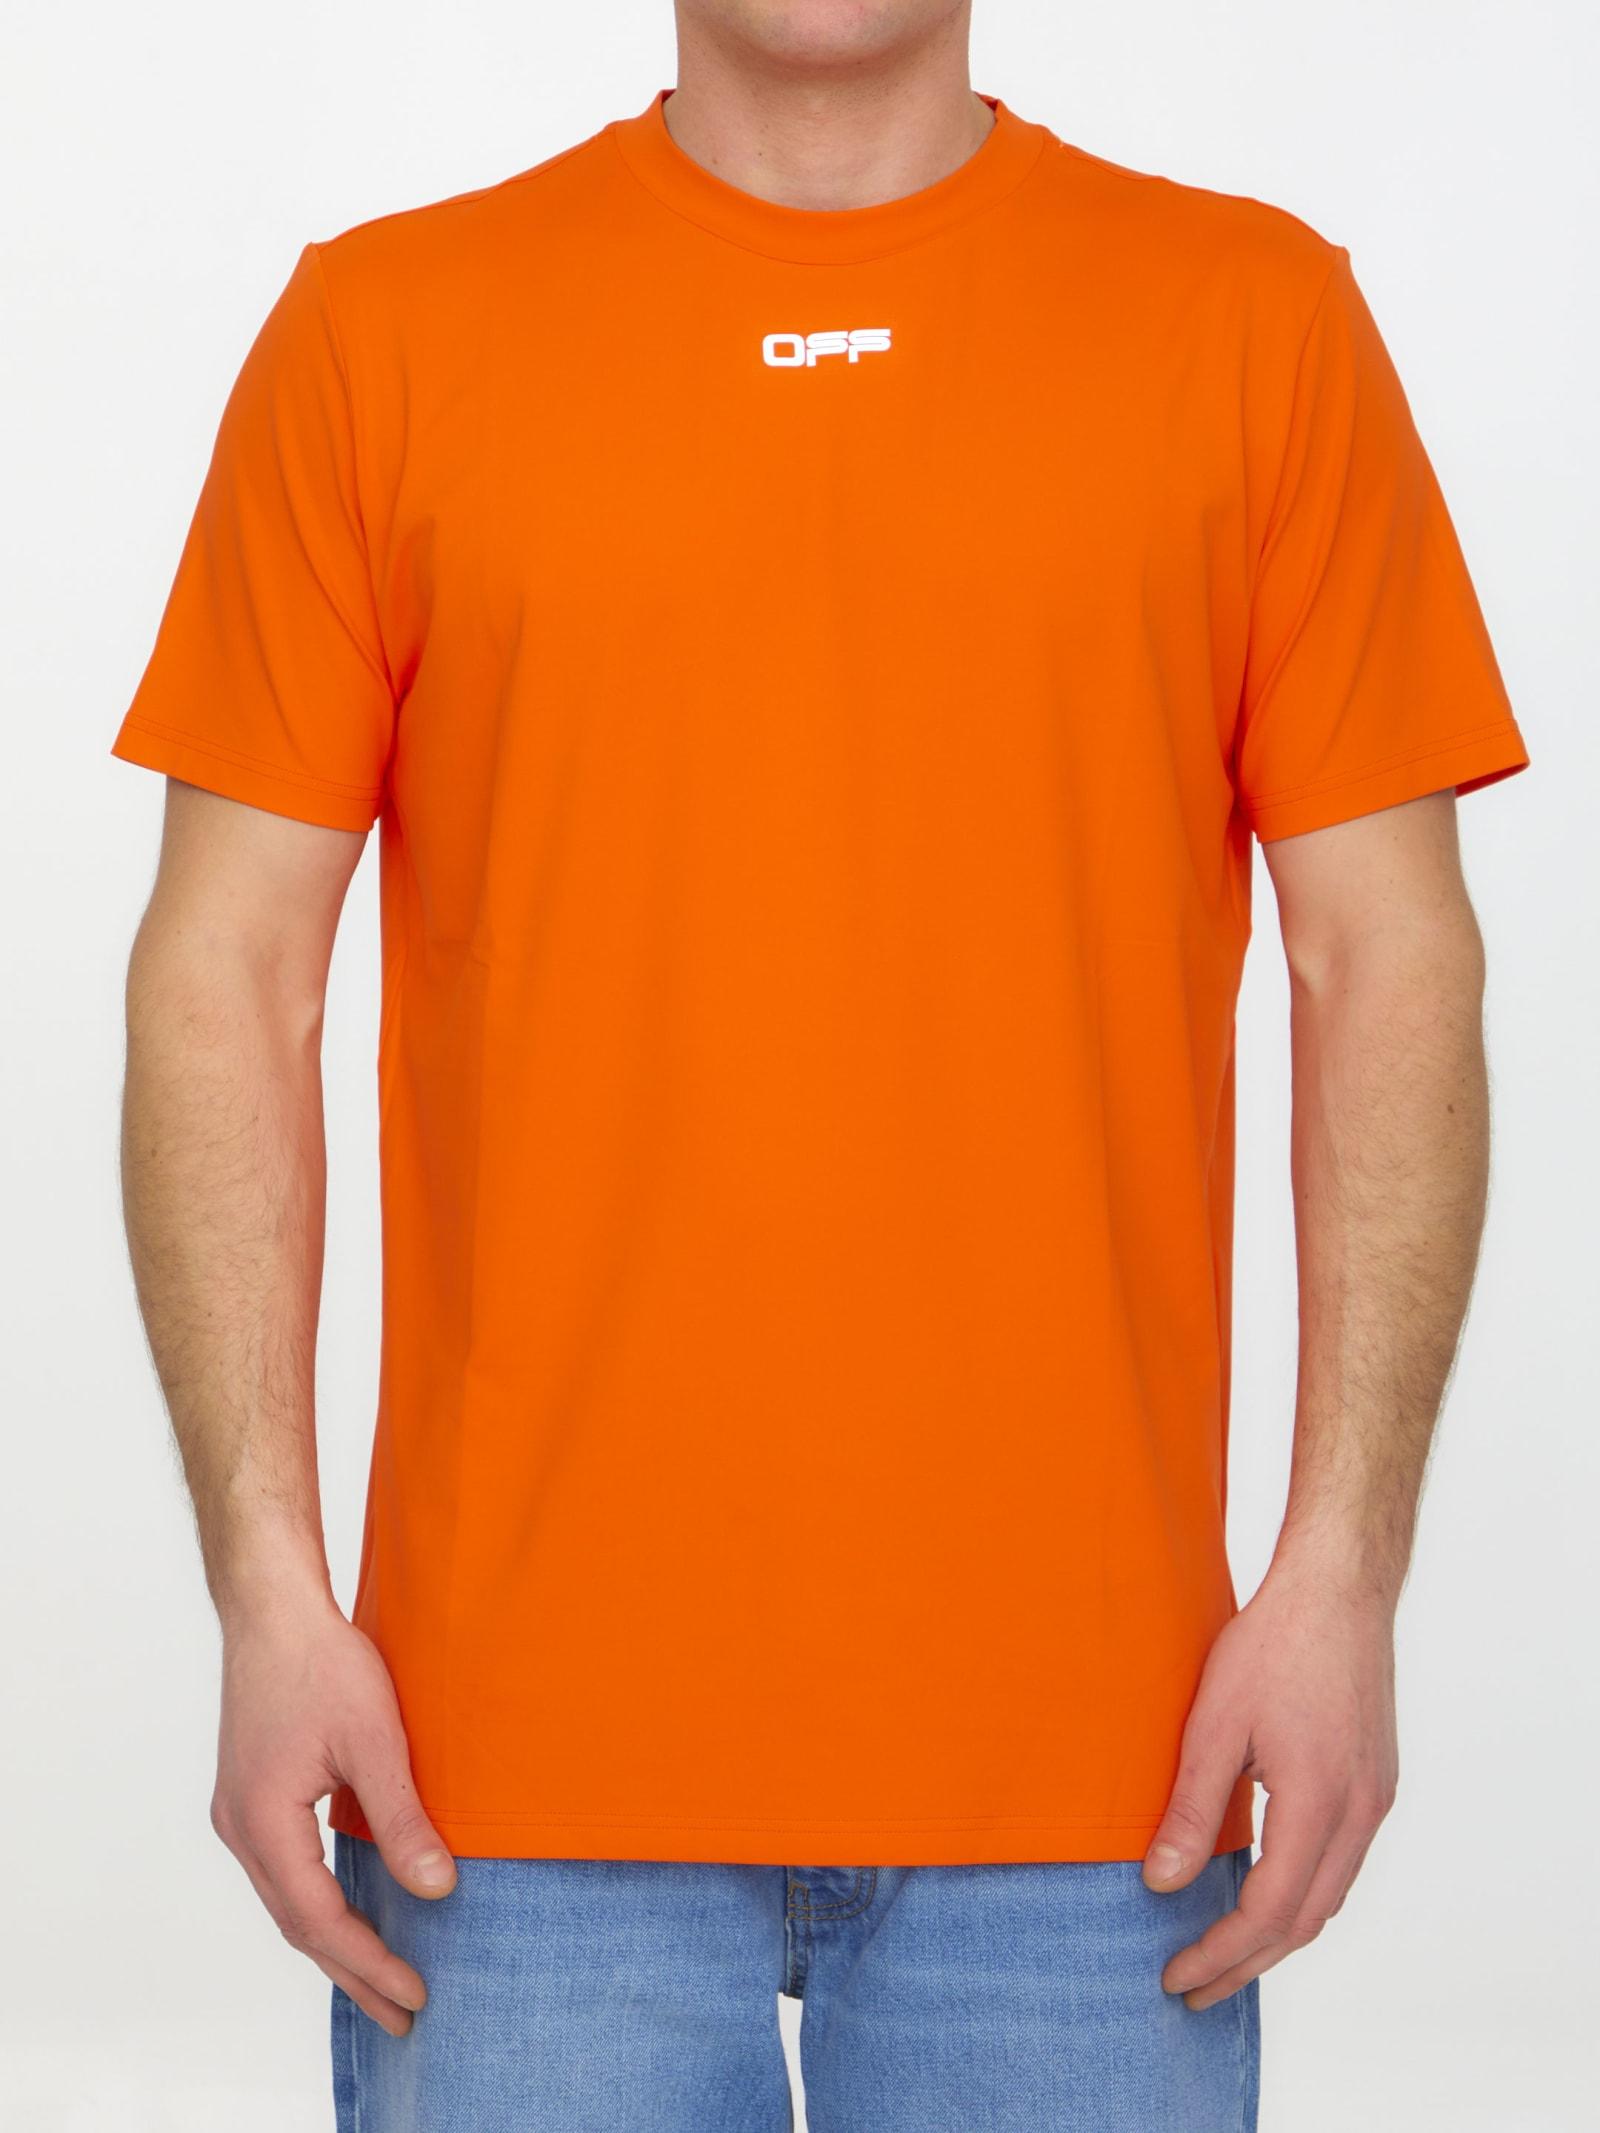 abloh shirt orange